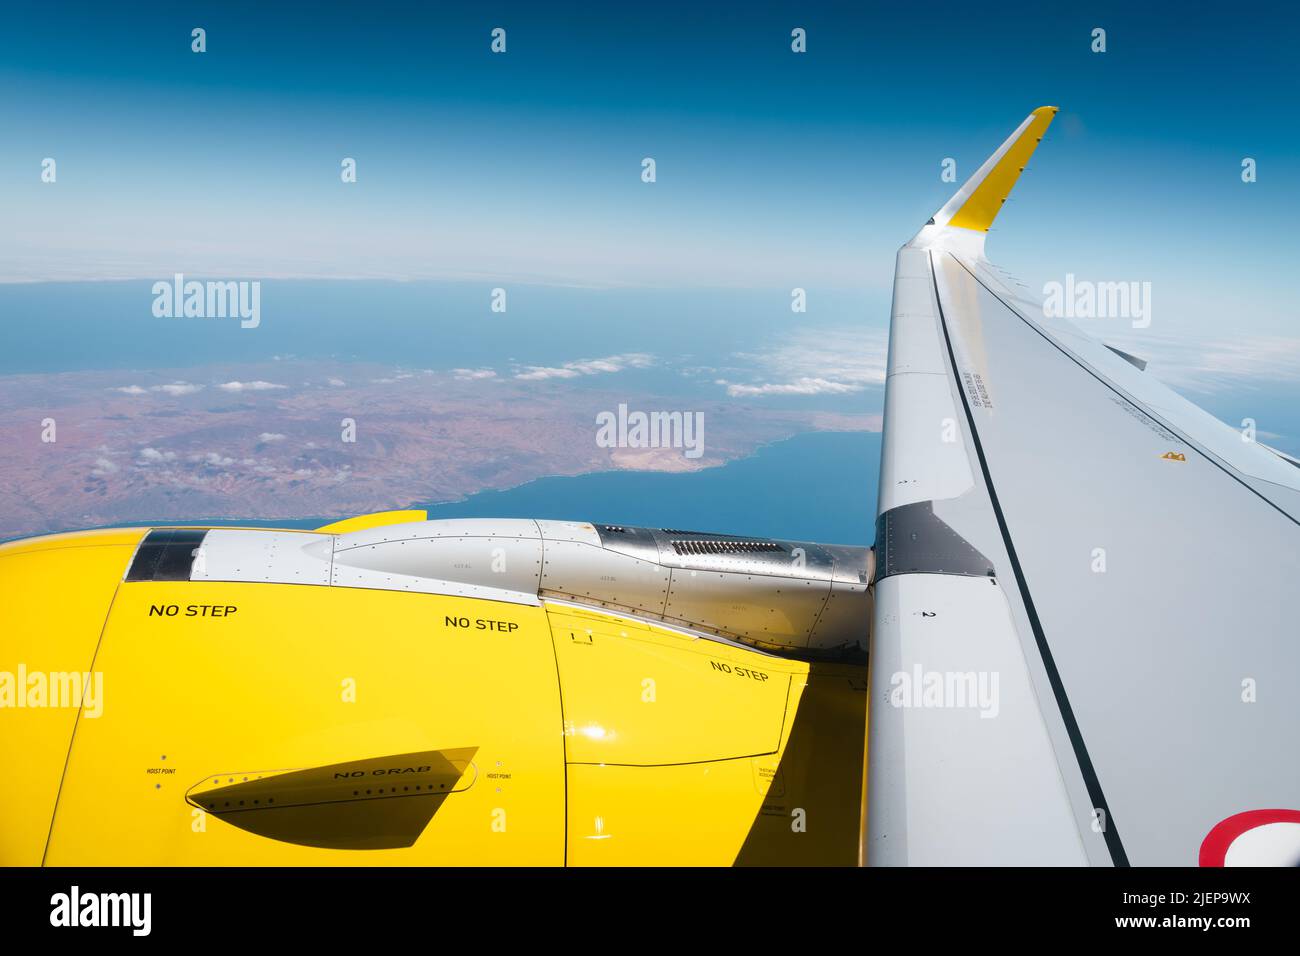 Blick auf den gelben Flugzeugmotor und Flügel im Flug vom Fenster aus und die Insel Gran Canaria darunter. Sommerurlaub, Flugreisen Konzepte Stockfoto